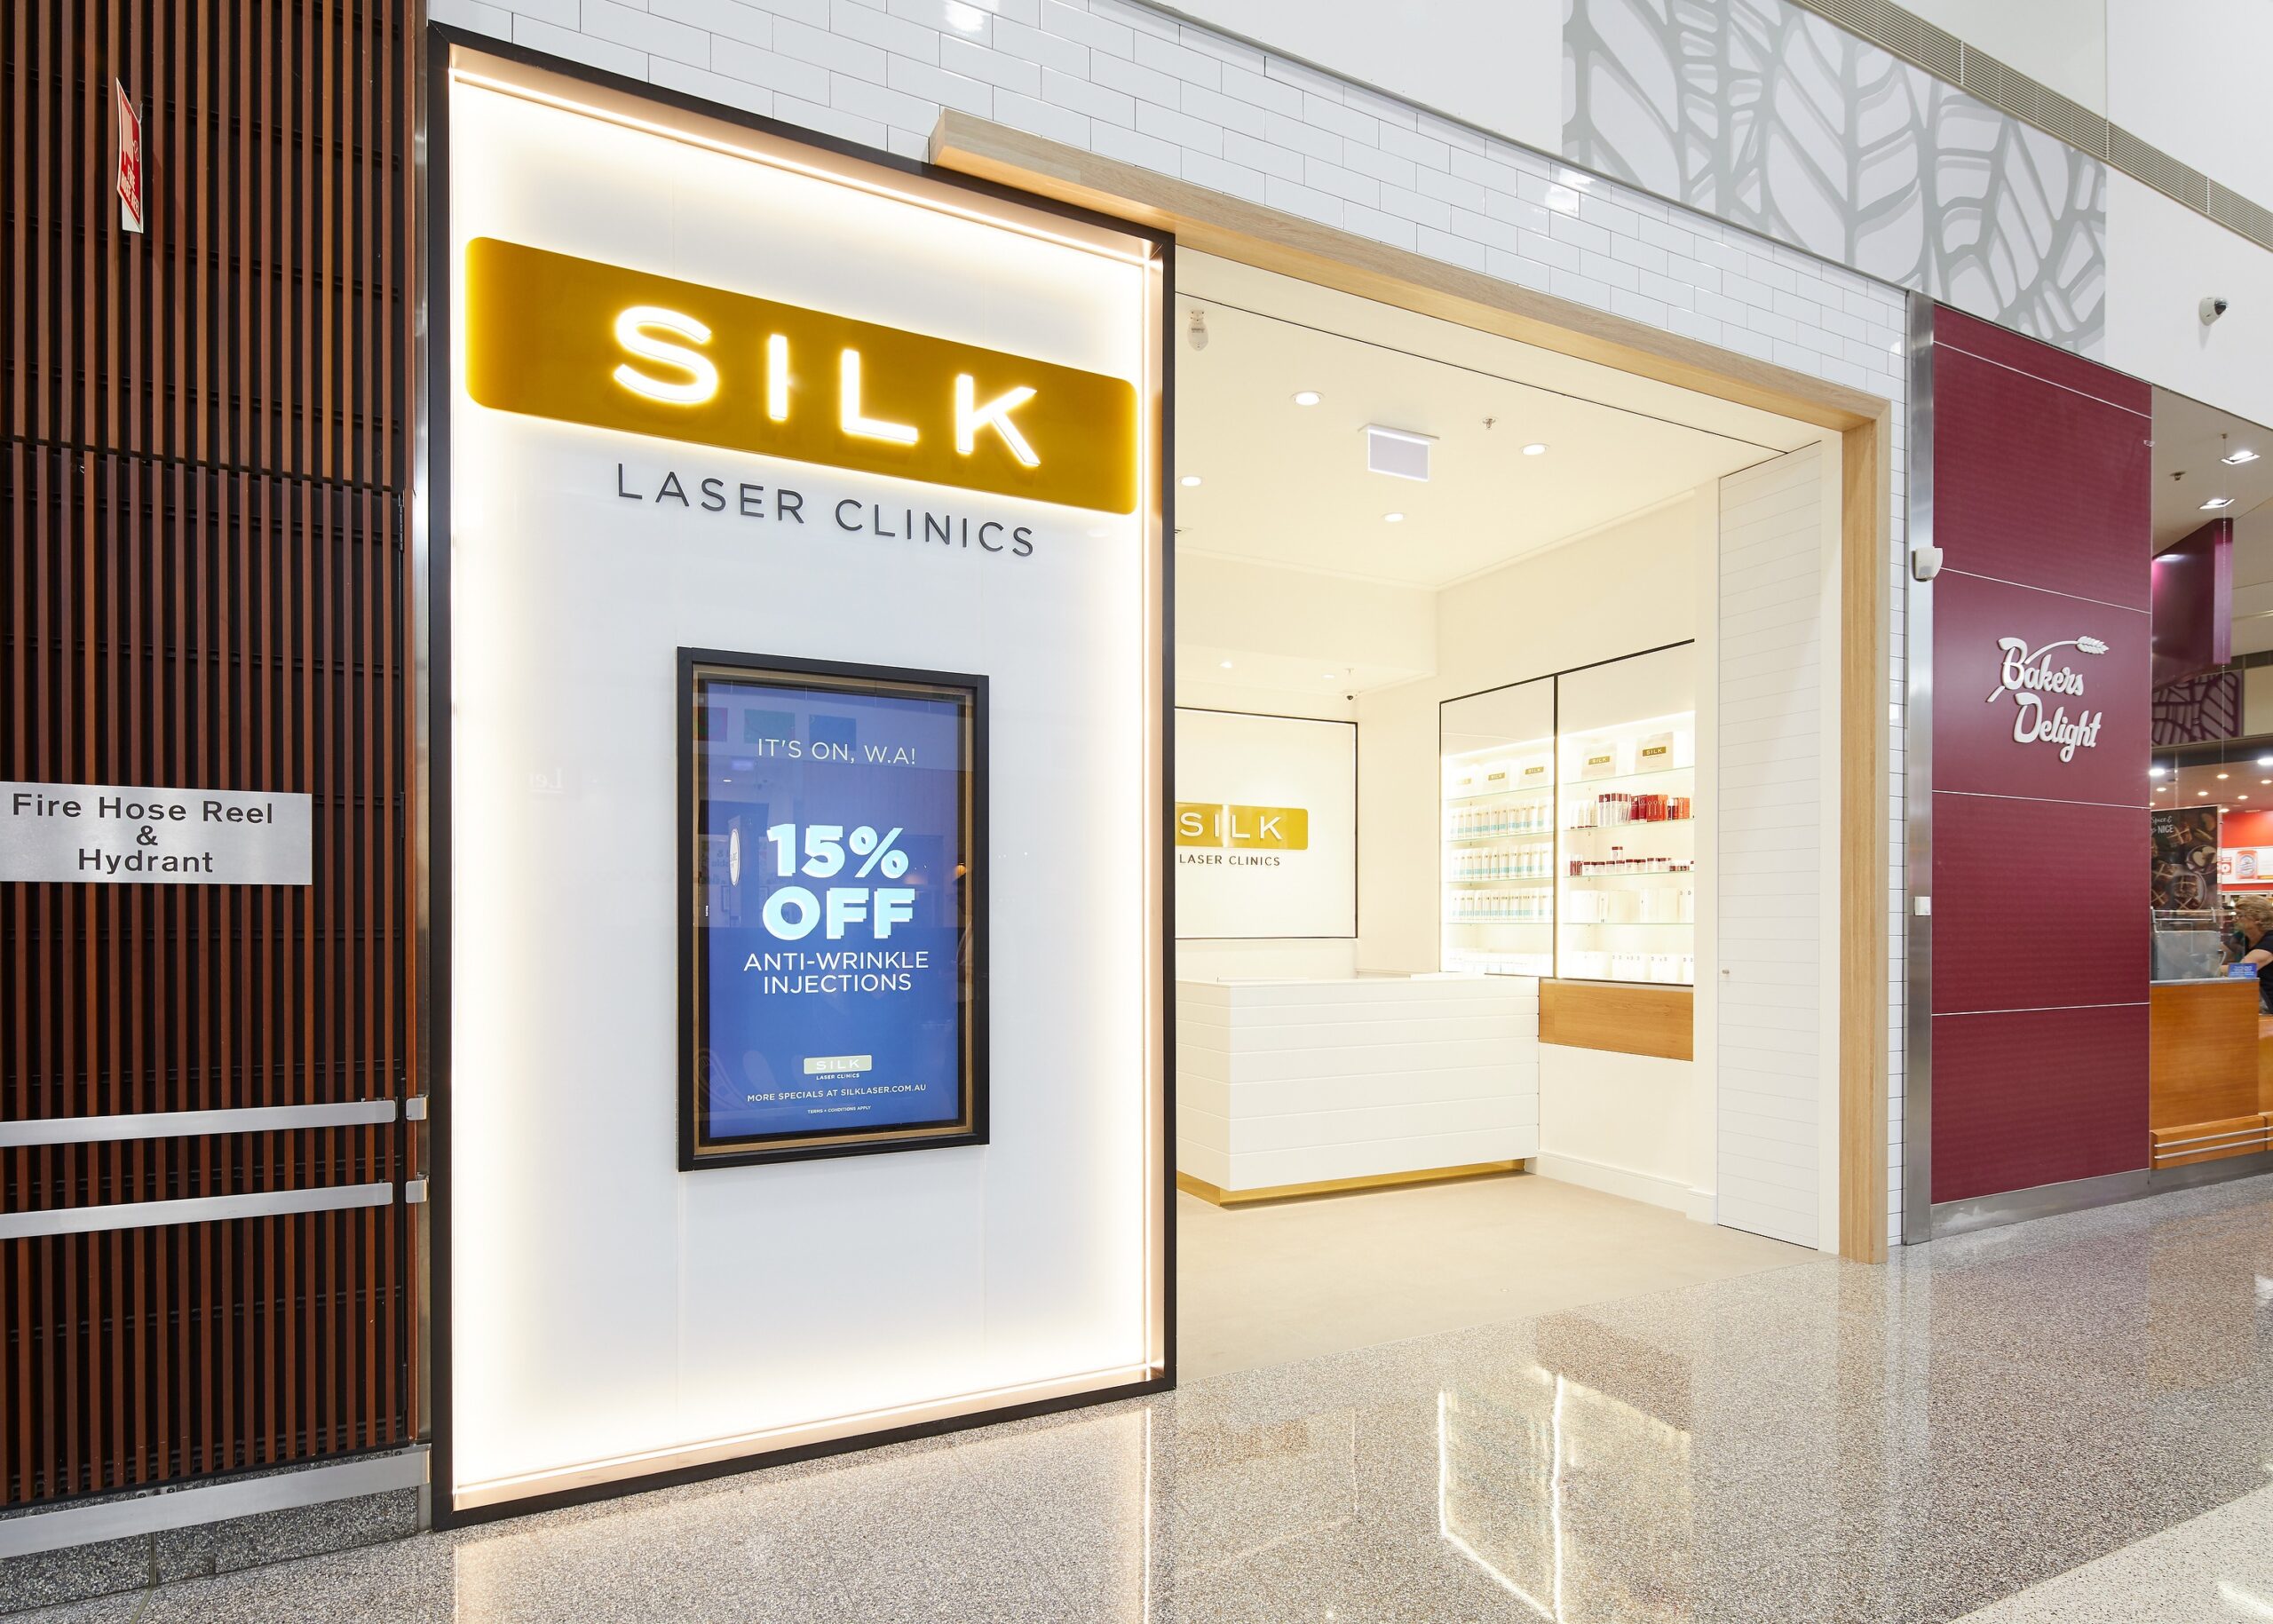 Silk-Laser-Clinics-Ellenbrook